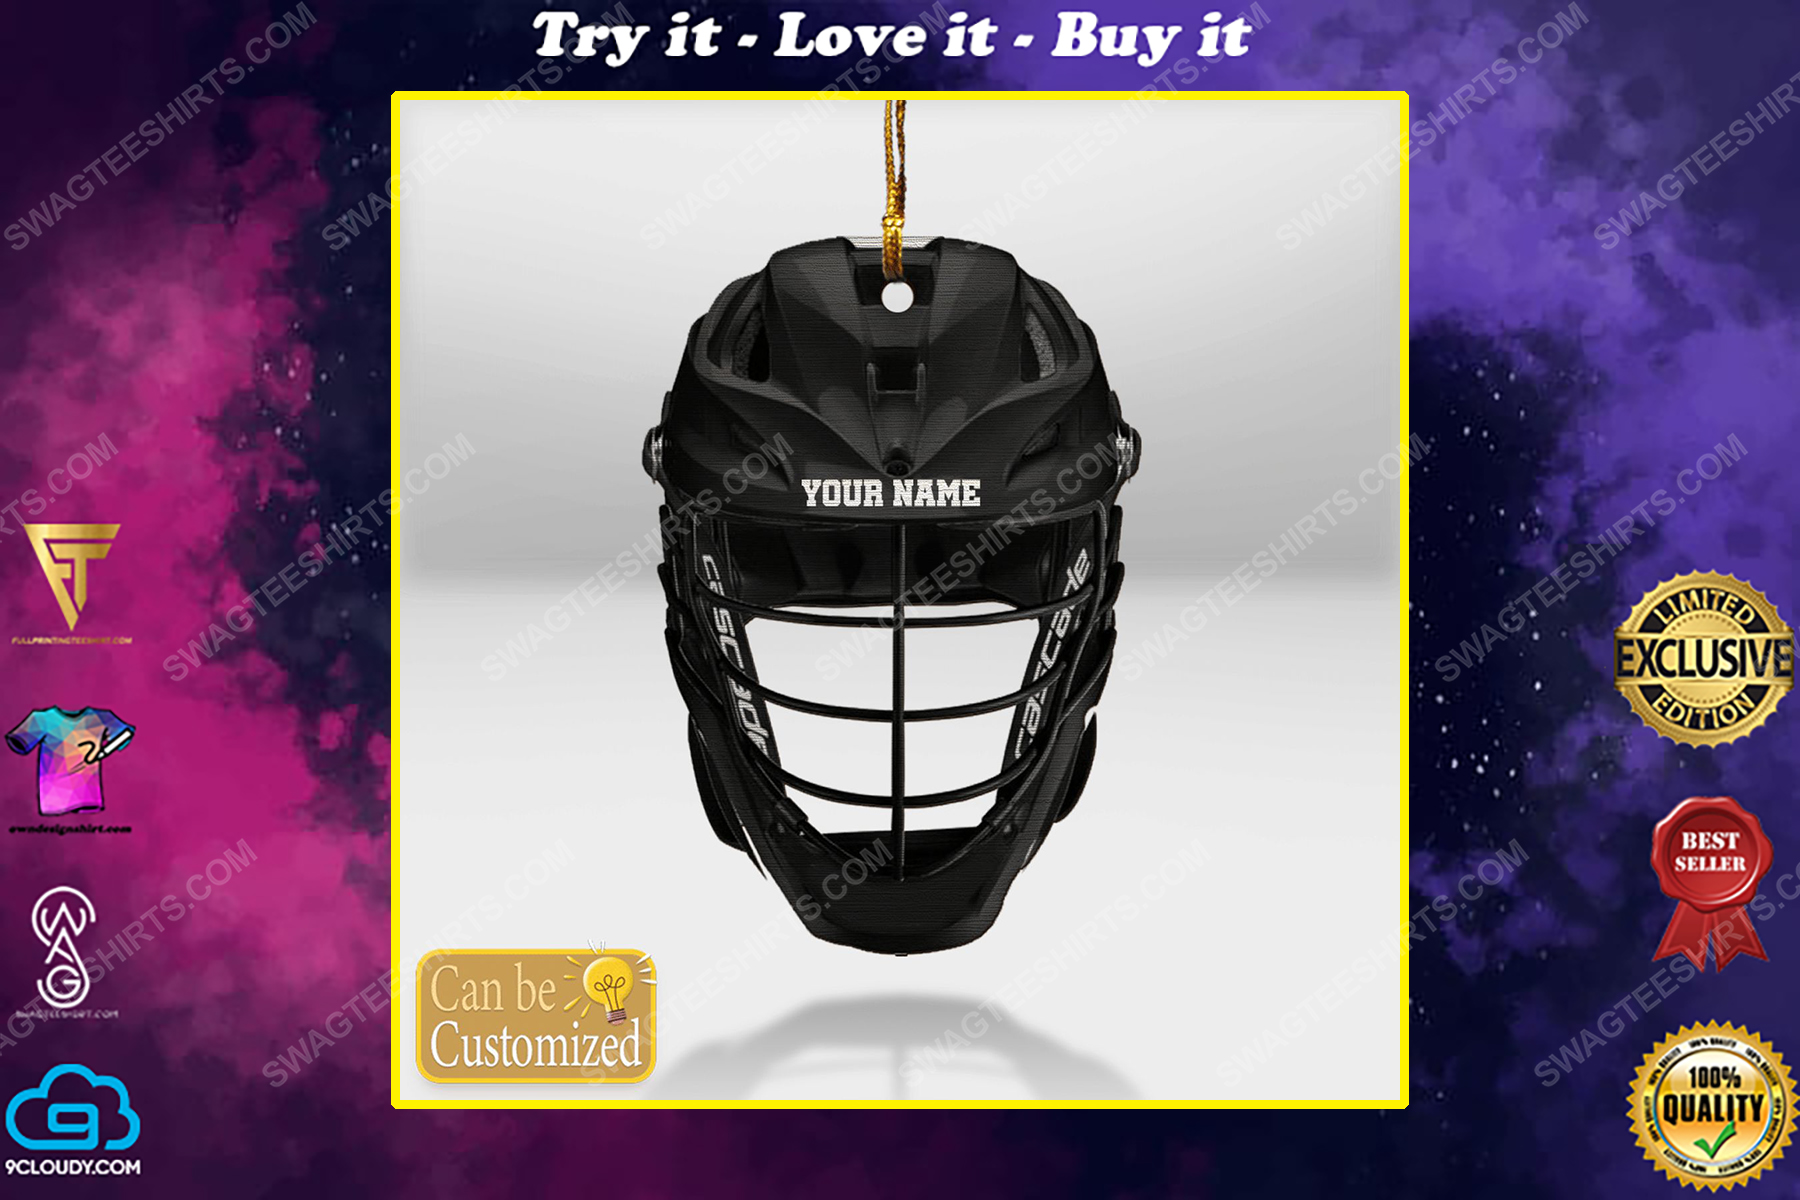 Custom lacrosse helmet black mask christmas gift ornament